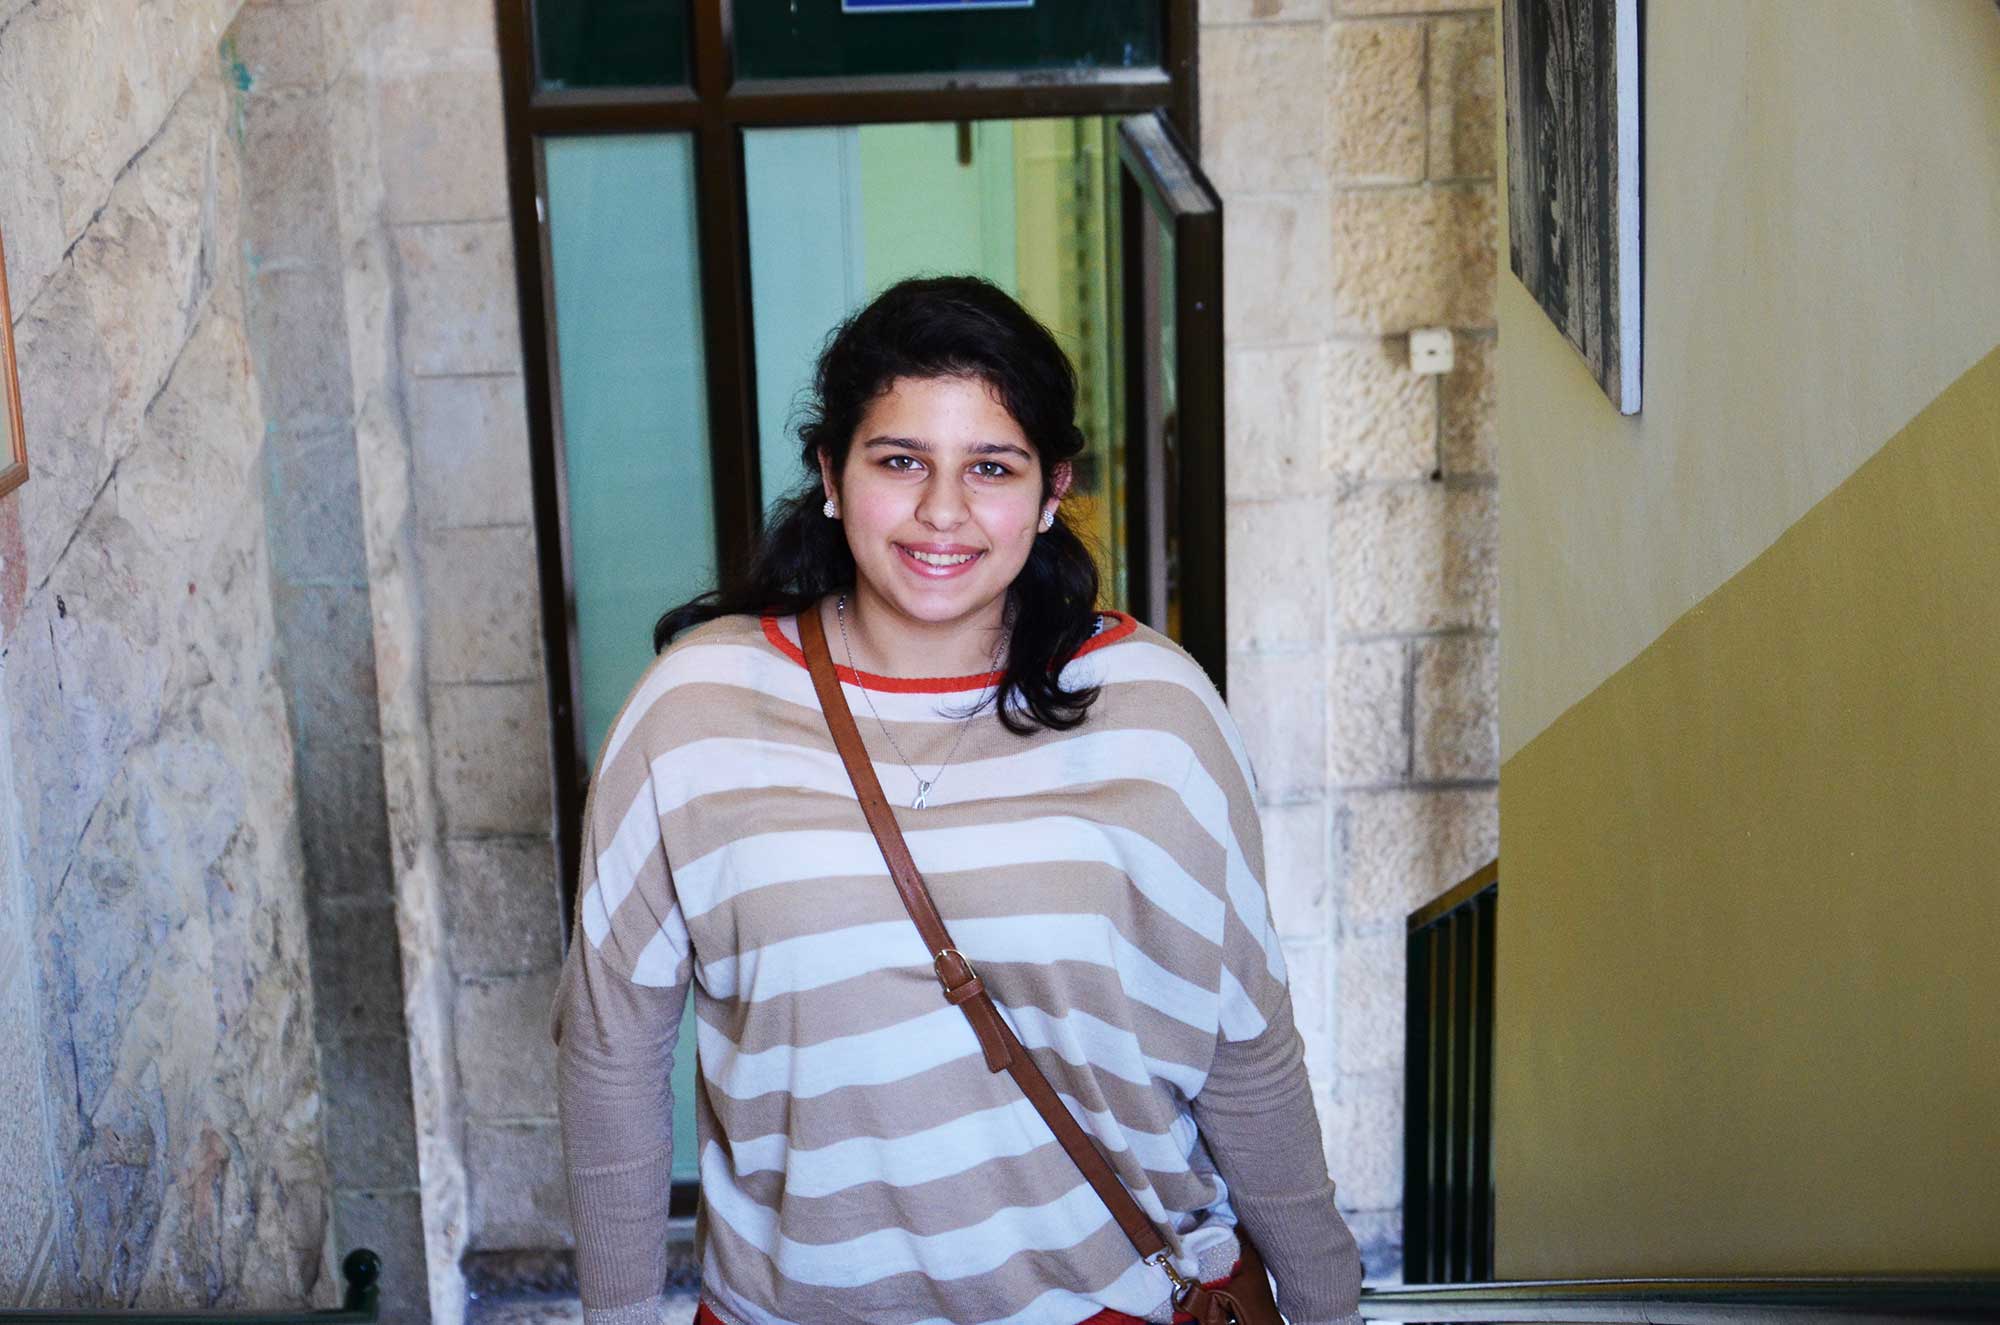 Tala Salfiti, High School Student